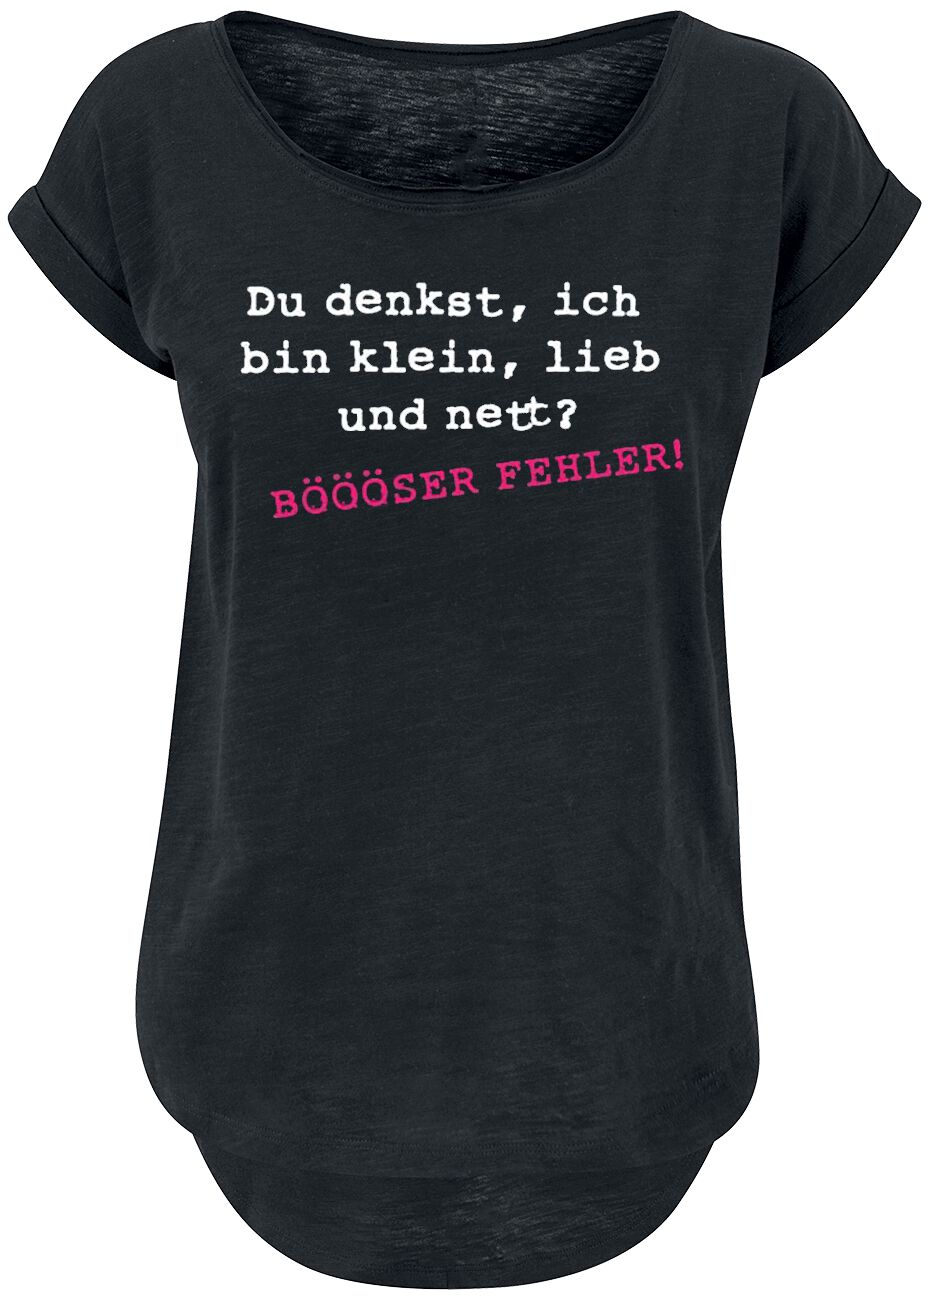 Sprüche BÖÖÖSER FEHLER! T-Shirt schwarz in XL